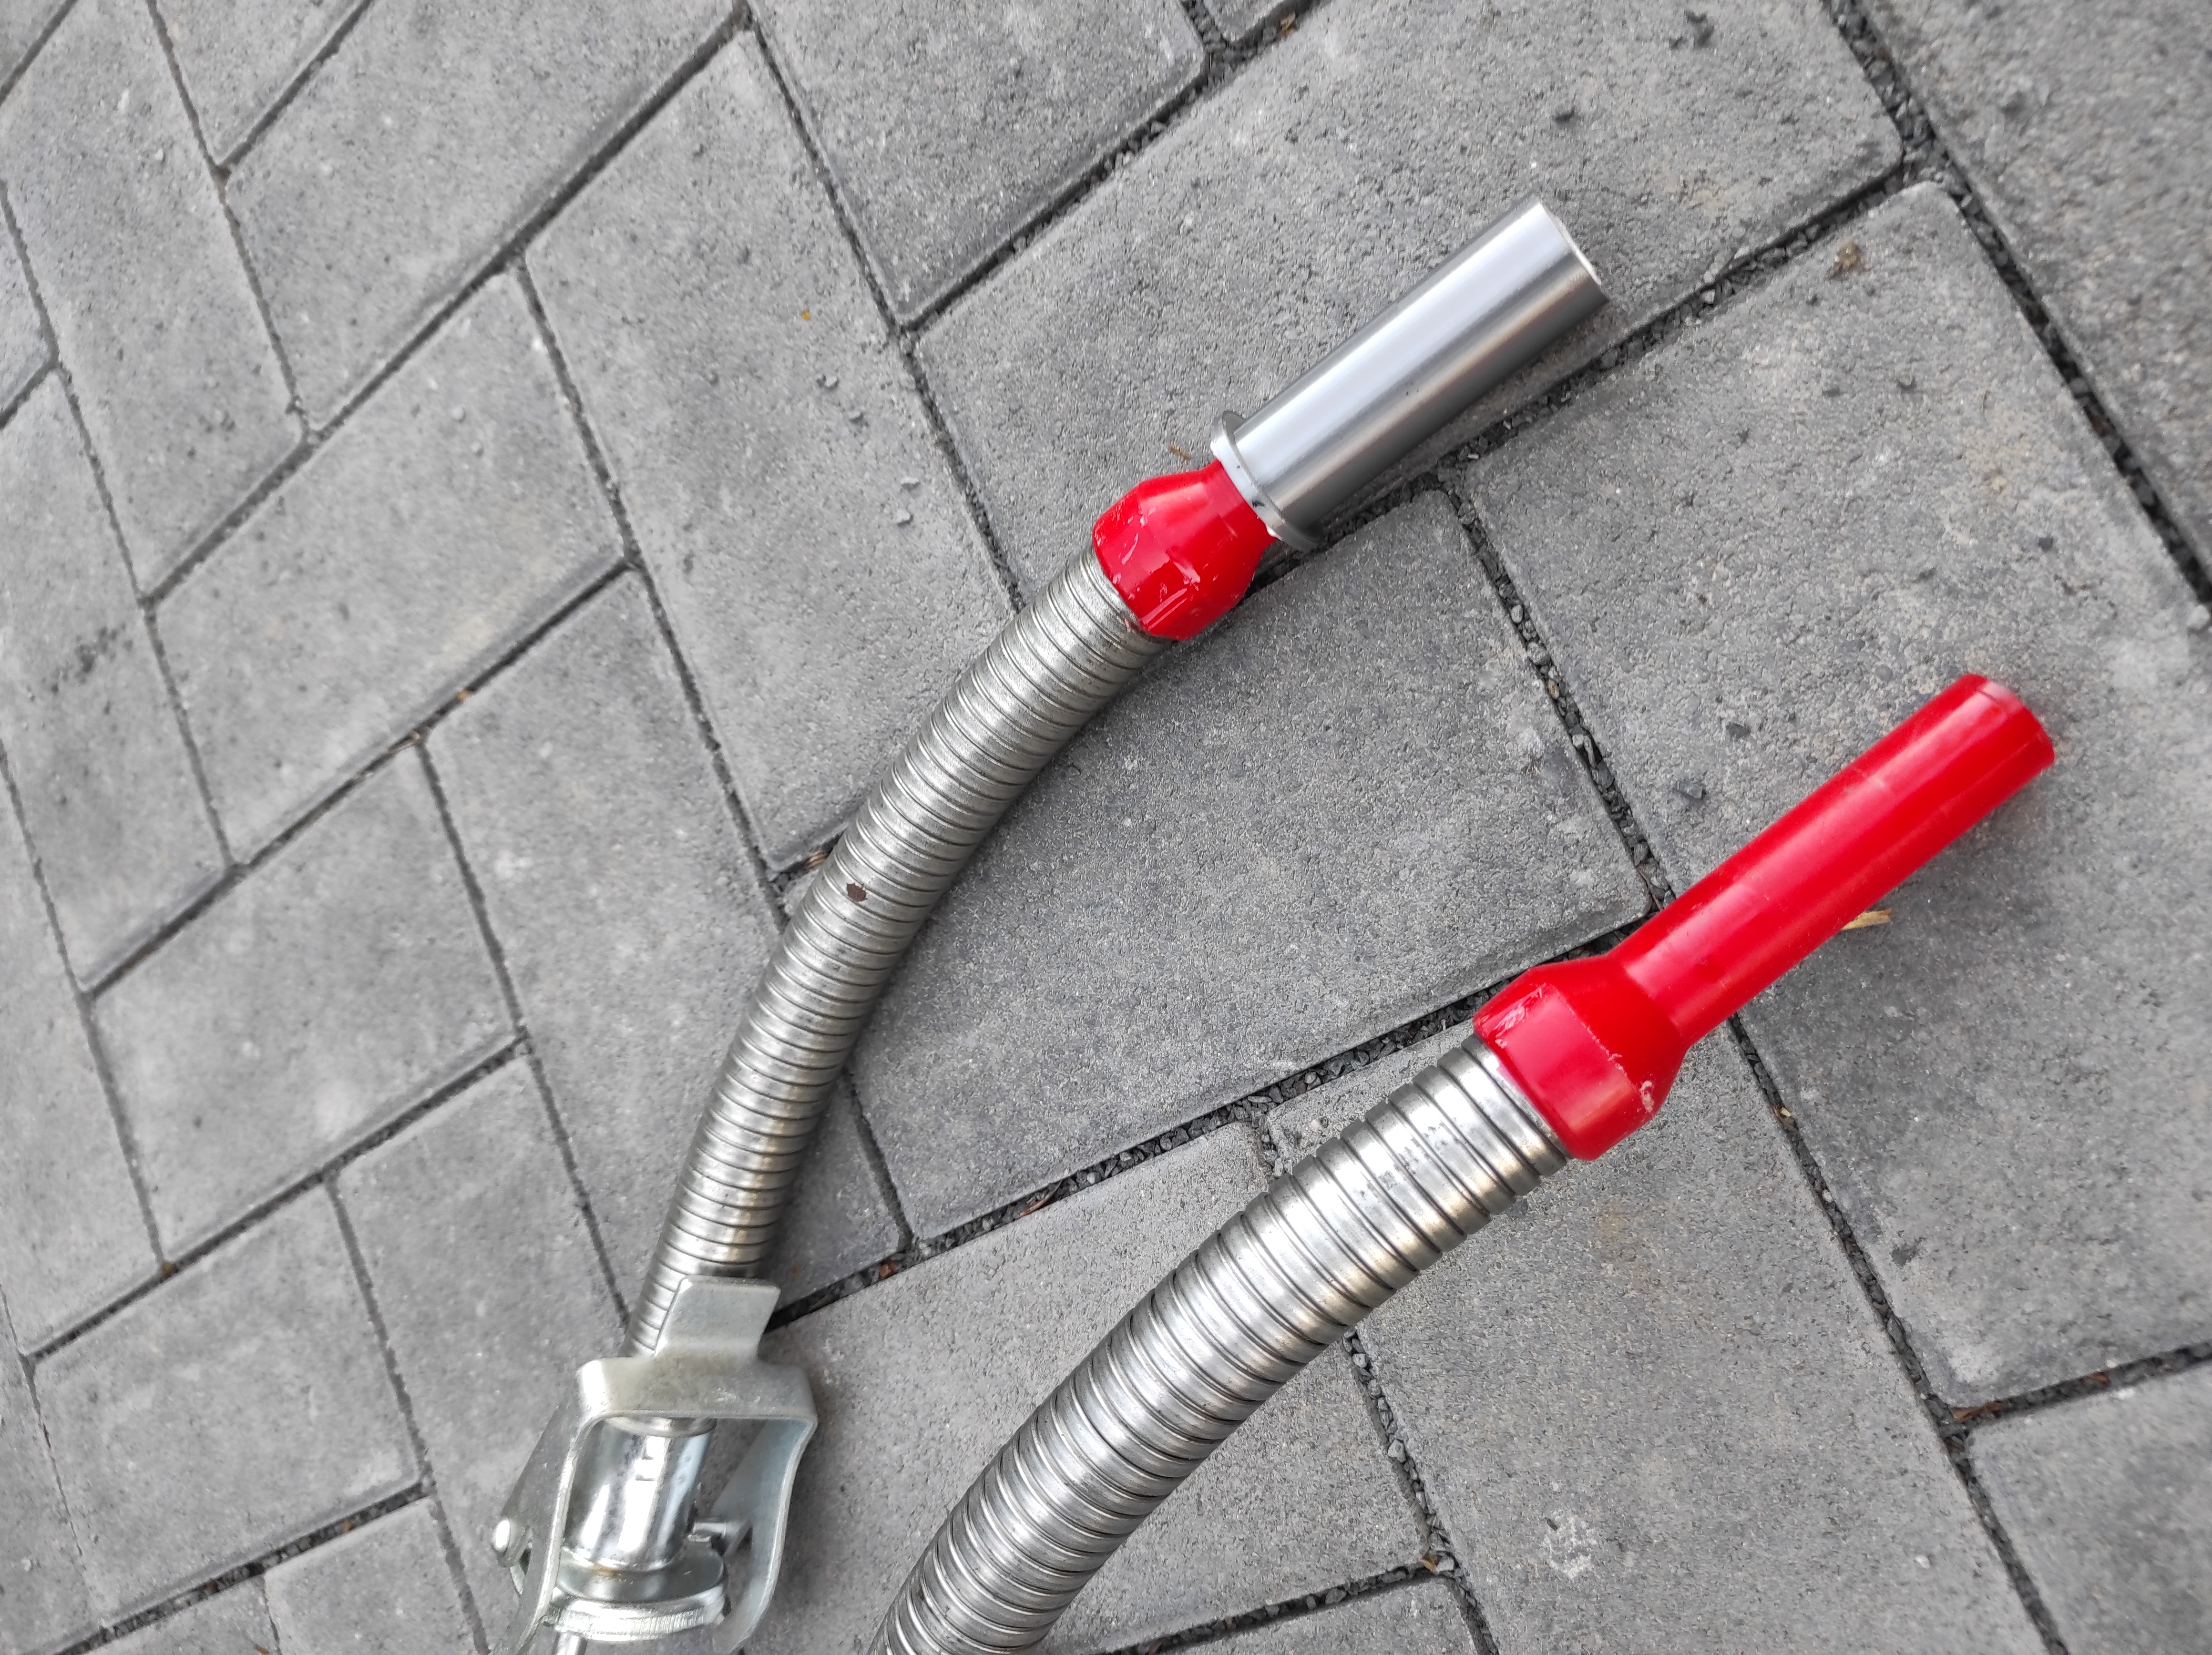 Gasoline to diesel nozzle adapter / Benzin auf Dieselstutzen Adapter